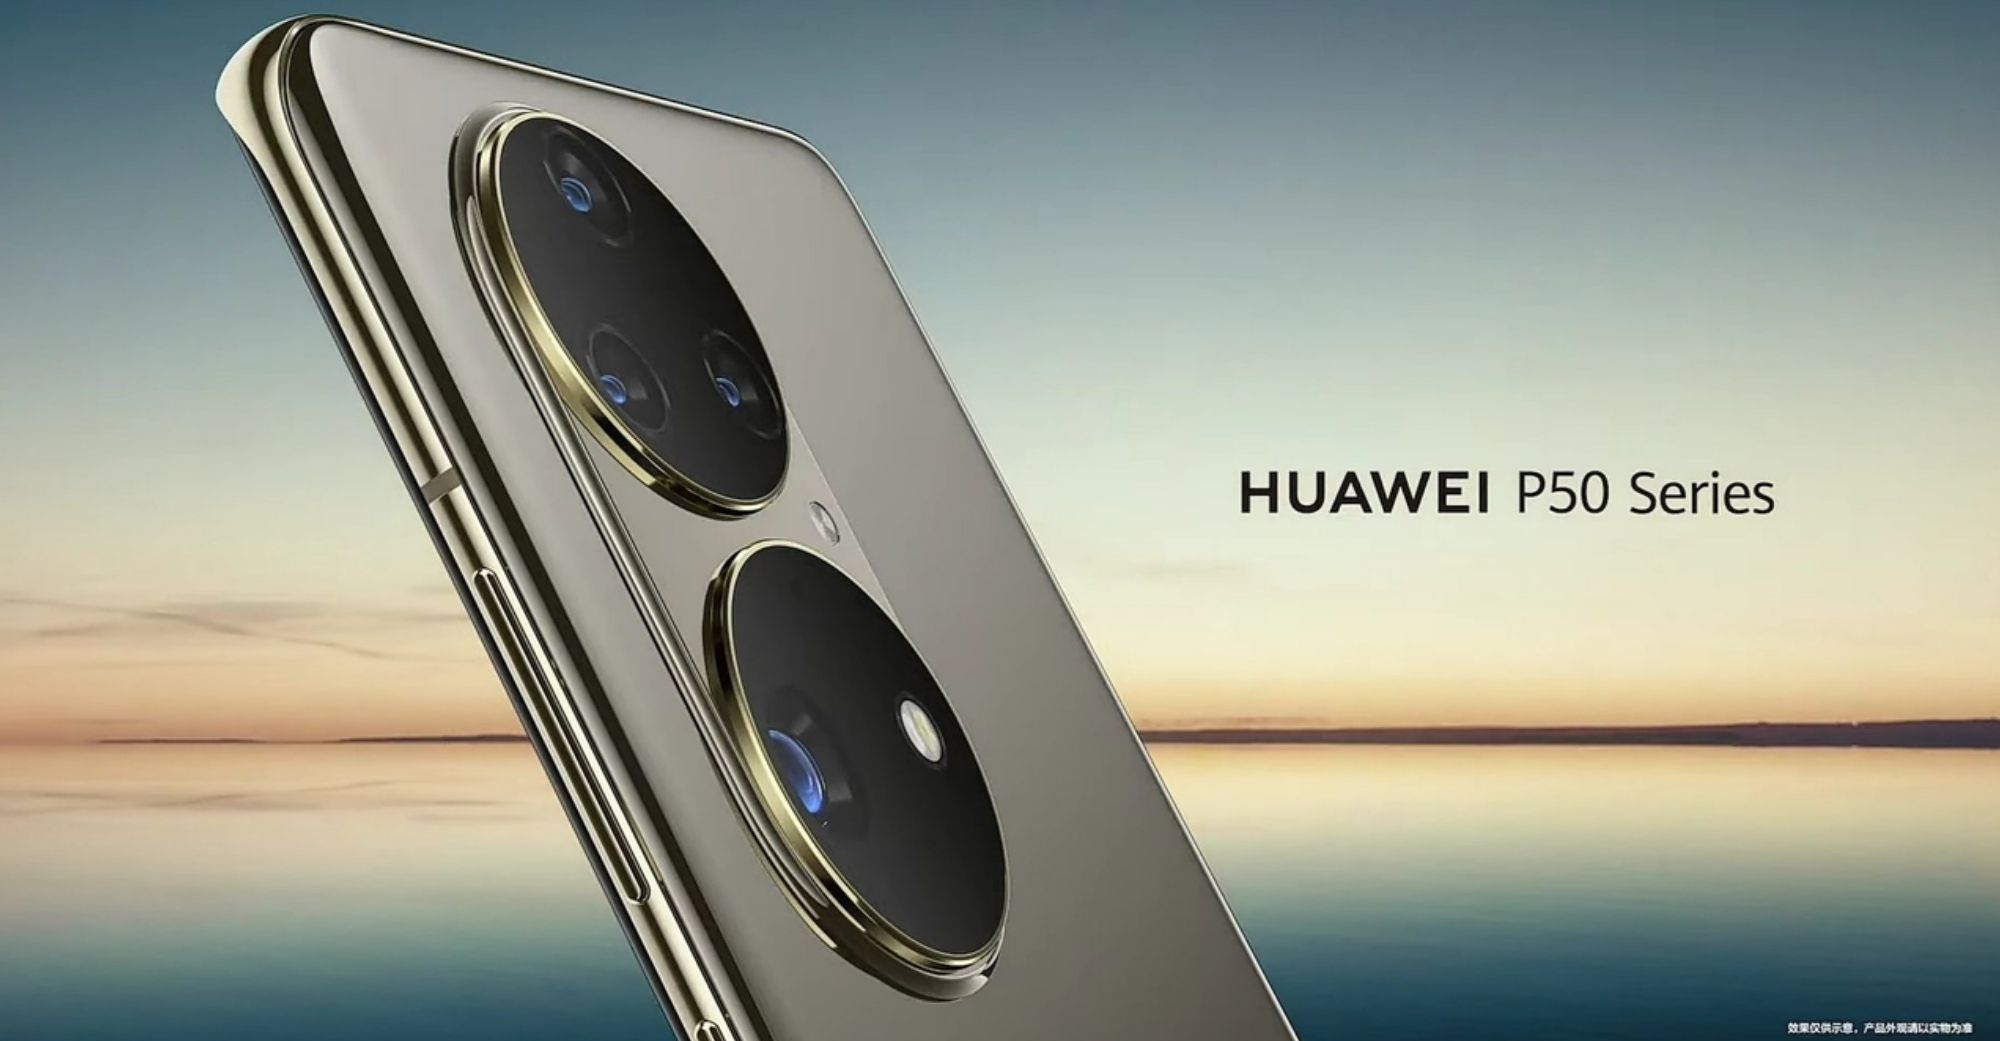 Huawei ਨੇ ਆਧੁਨਿਕ ਤੌਰ ‘ਤੇ ਘਰੇਲੂ ਹਾਰਮੋਨੀਓਸ ਦੀ ਸ਼ੁਰੂਆਤ ਕੀਤੀ, ਆਗਾਮੀ P50 ਫਲੈਗਸ਼ਿਪ ਫੋਨ ਨੂੰ ਪਰੇਸ਼ਾਨ ਕੀਤਾ